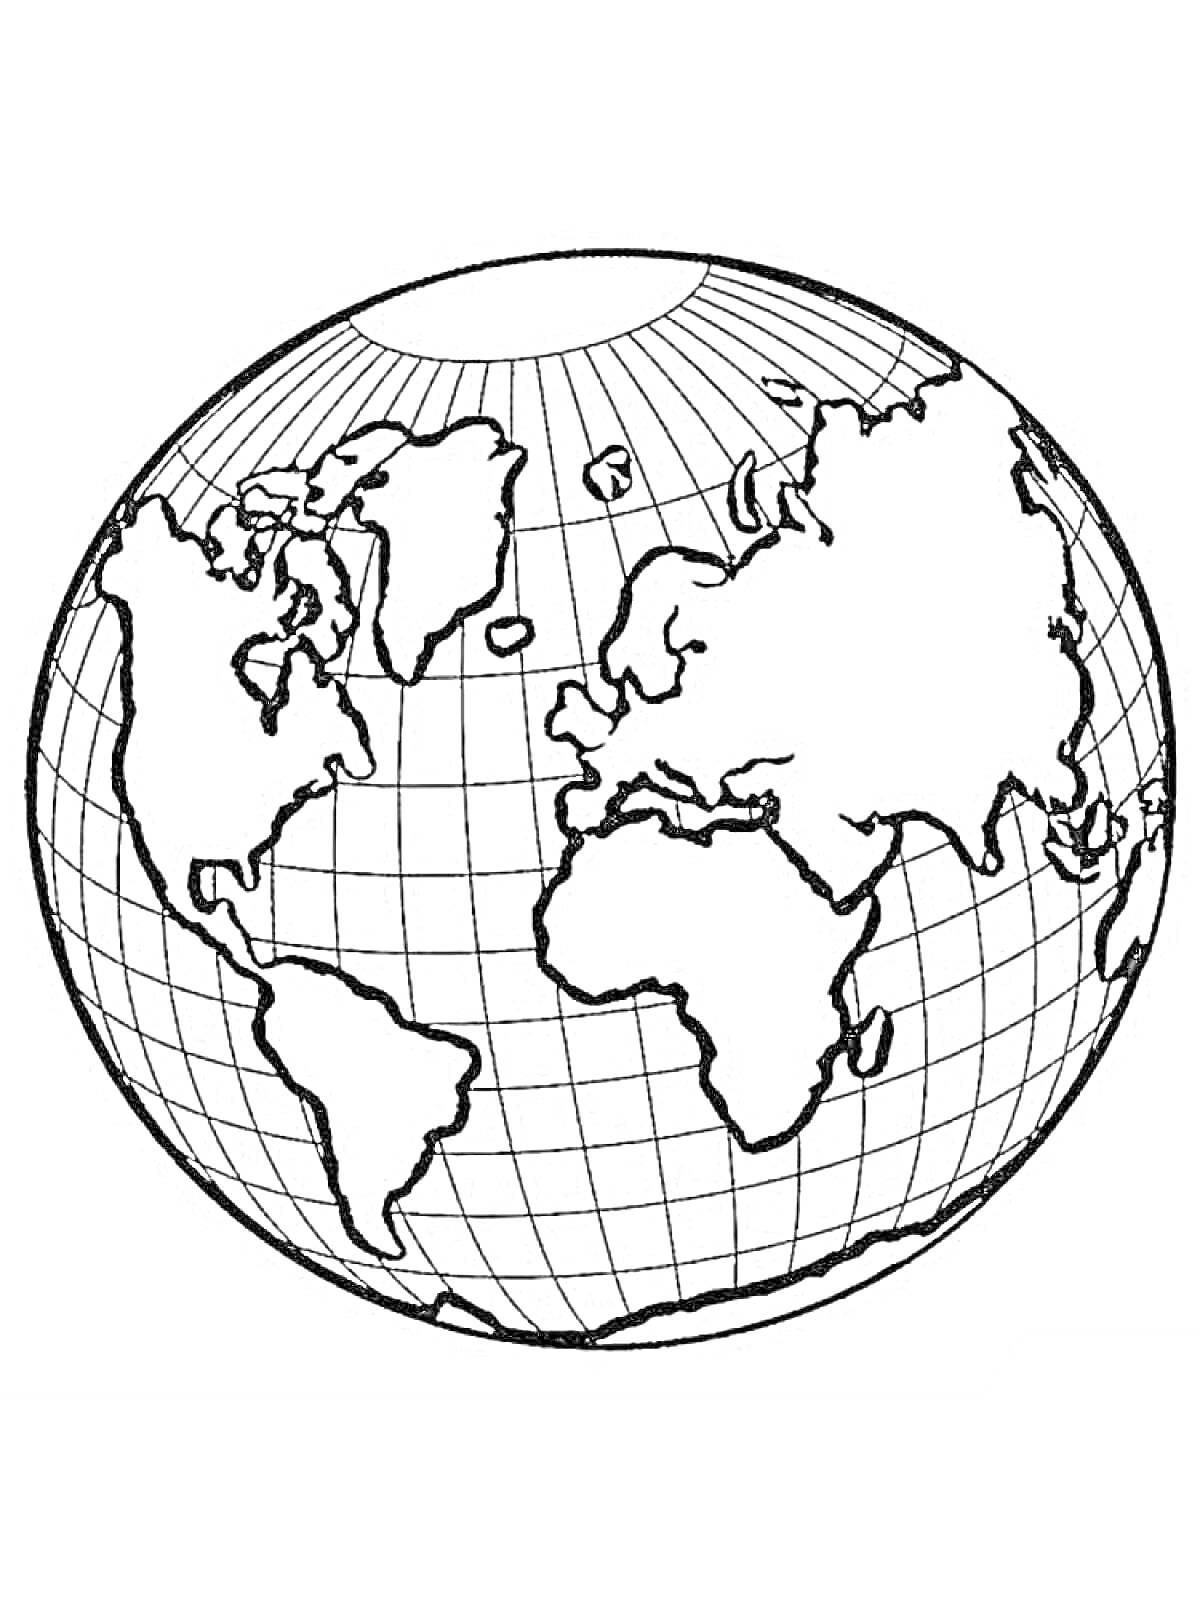 Глобус с отображением континентов на фоне сетки координат